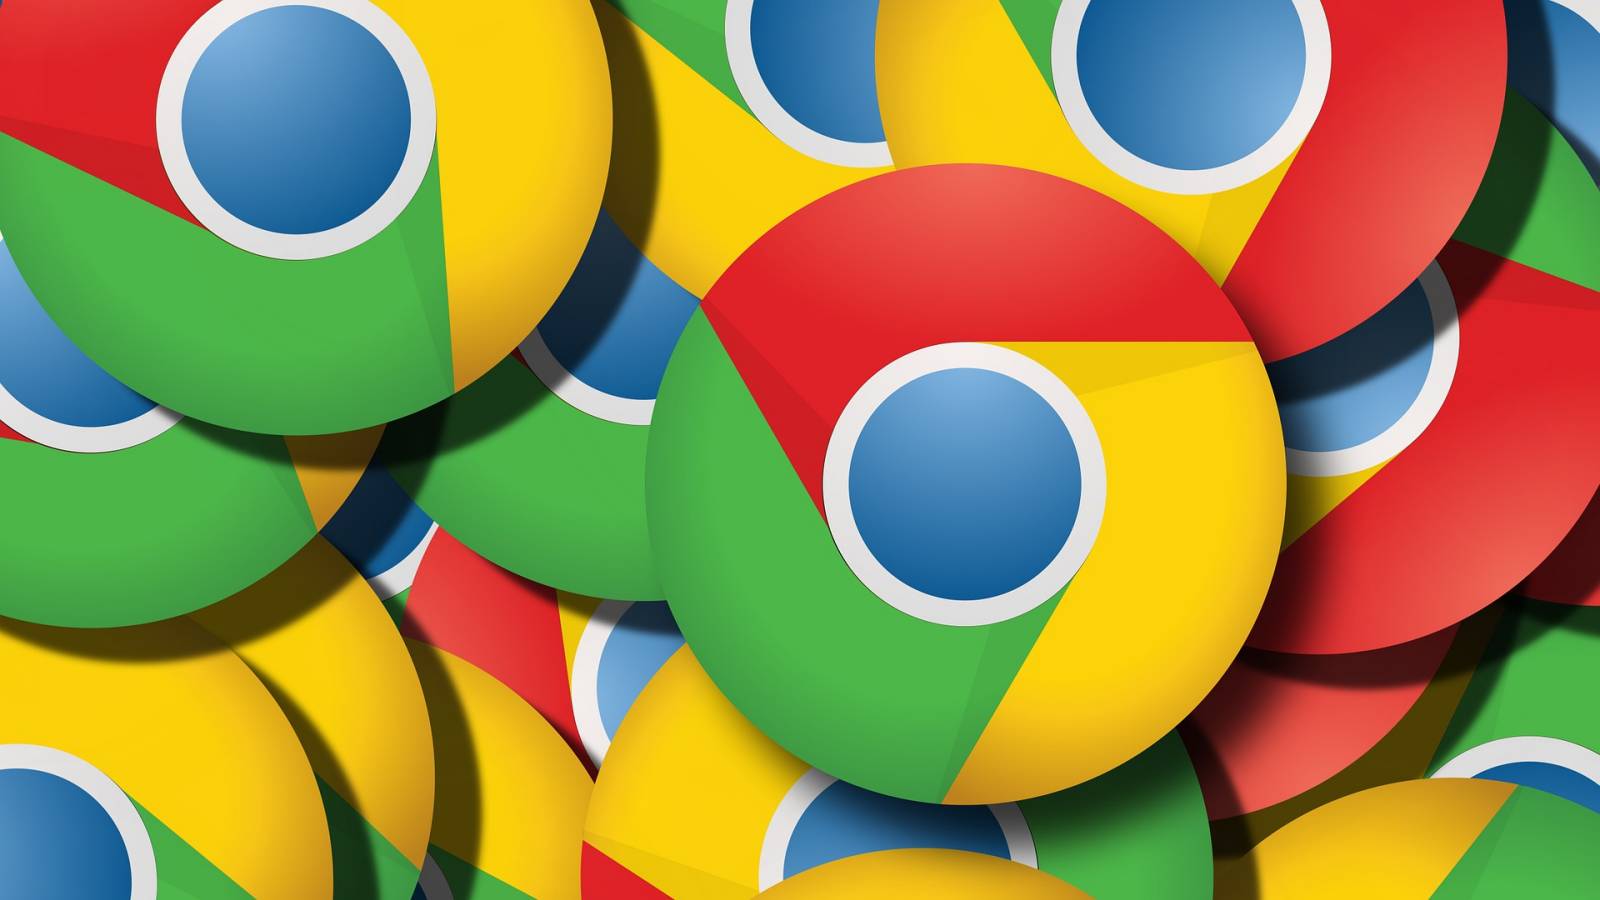 La mise à jour de Google Chrome apporte de nouvelles modifications aux téléphones et tablettes